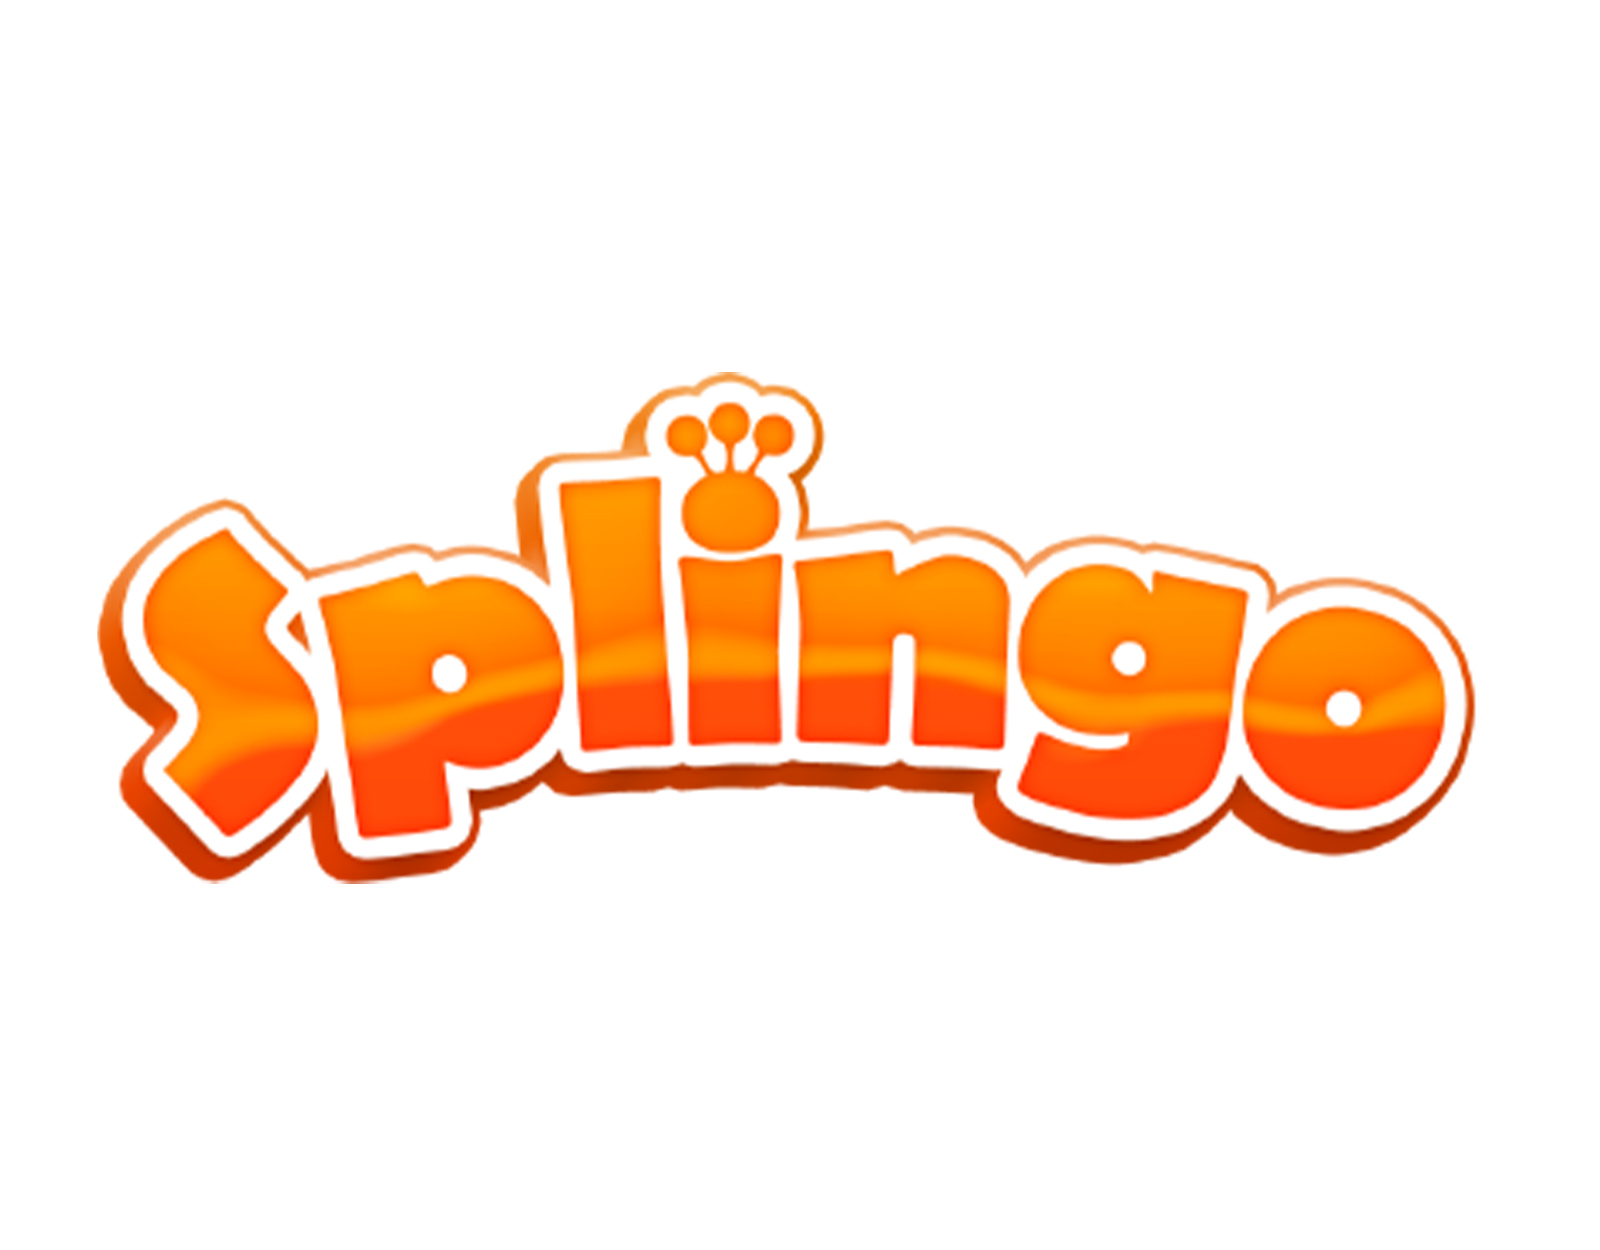 Splingo